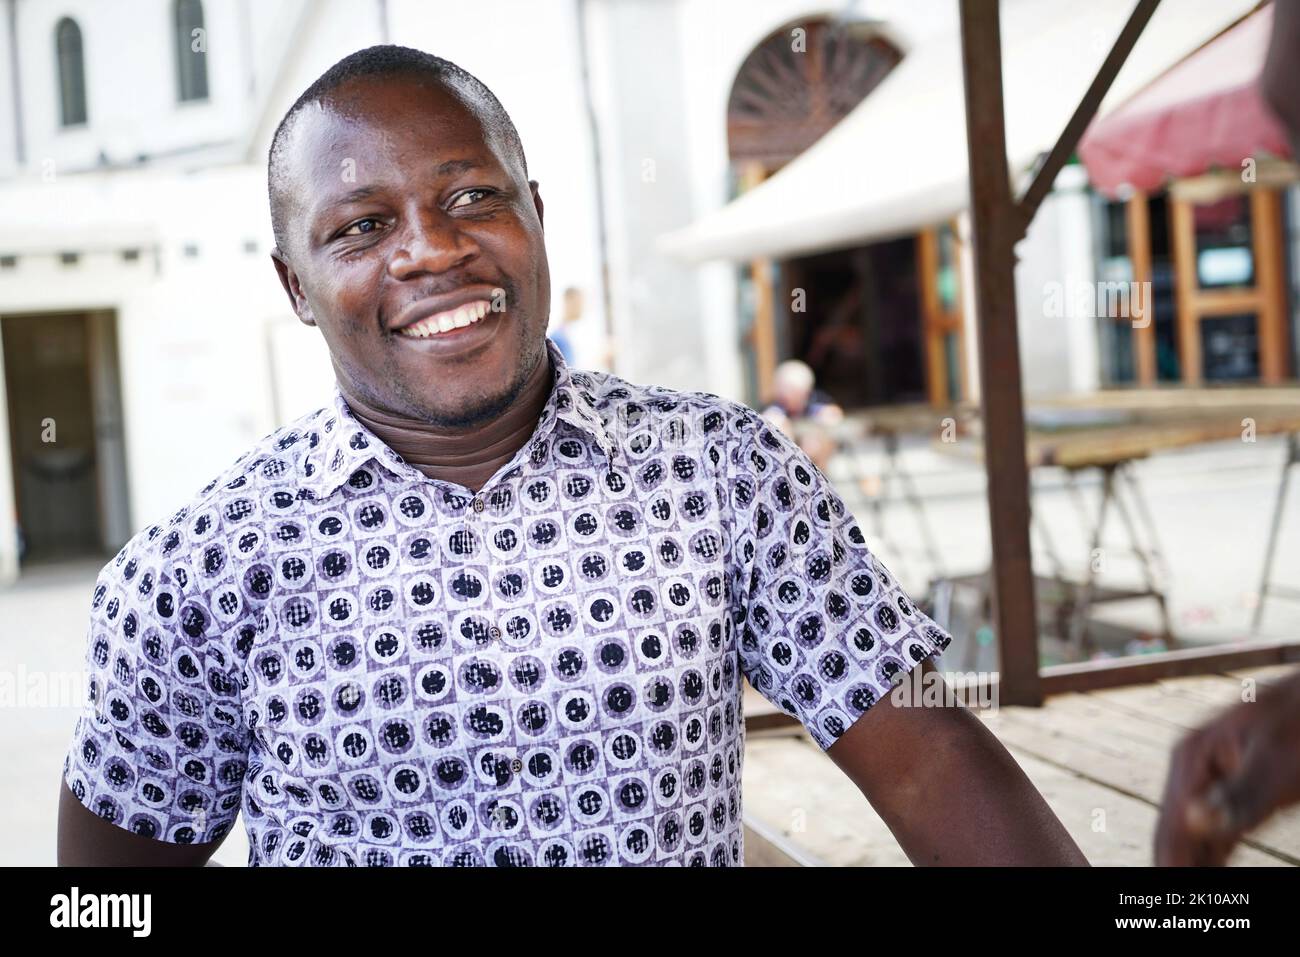 Edward Mukiibi, agriculteur, éducateur et entrepreneur social né en Ouganda, a été nommé président de Slow Food. Turin, Italie - septembre 2022 Banque D'Images